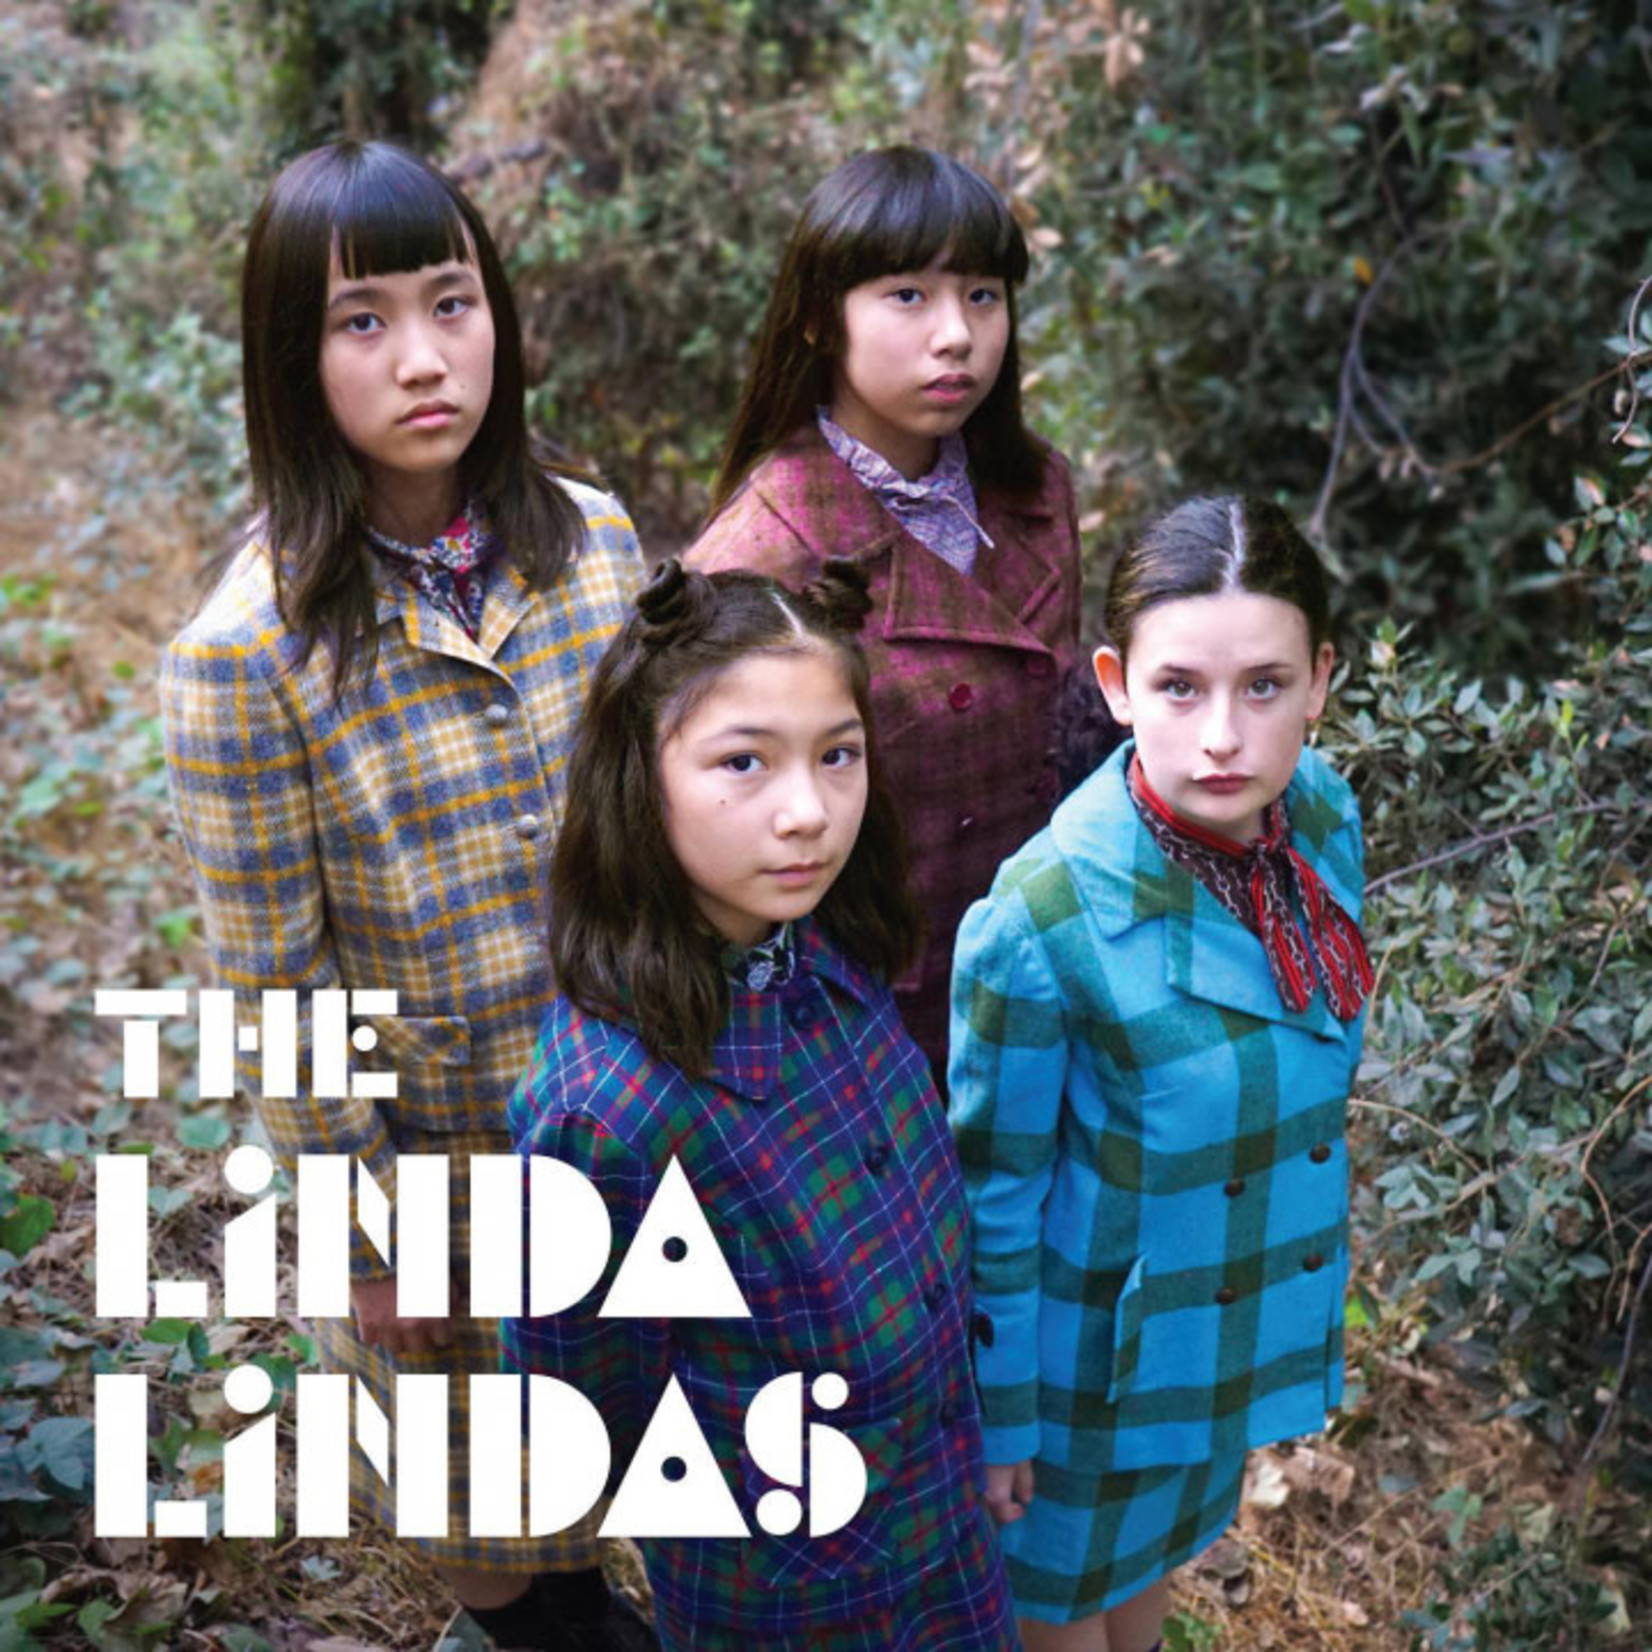 In The Red Linda Lindas - The Linda Lindas (12")